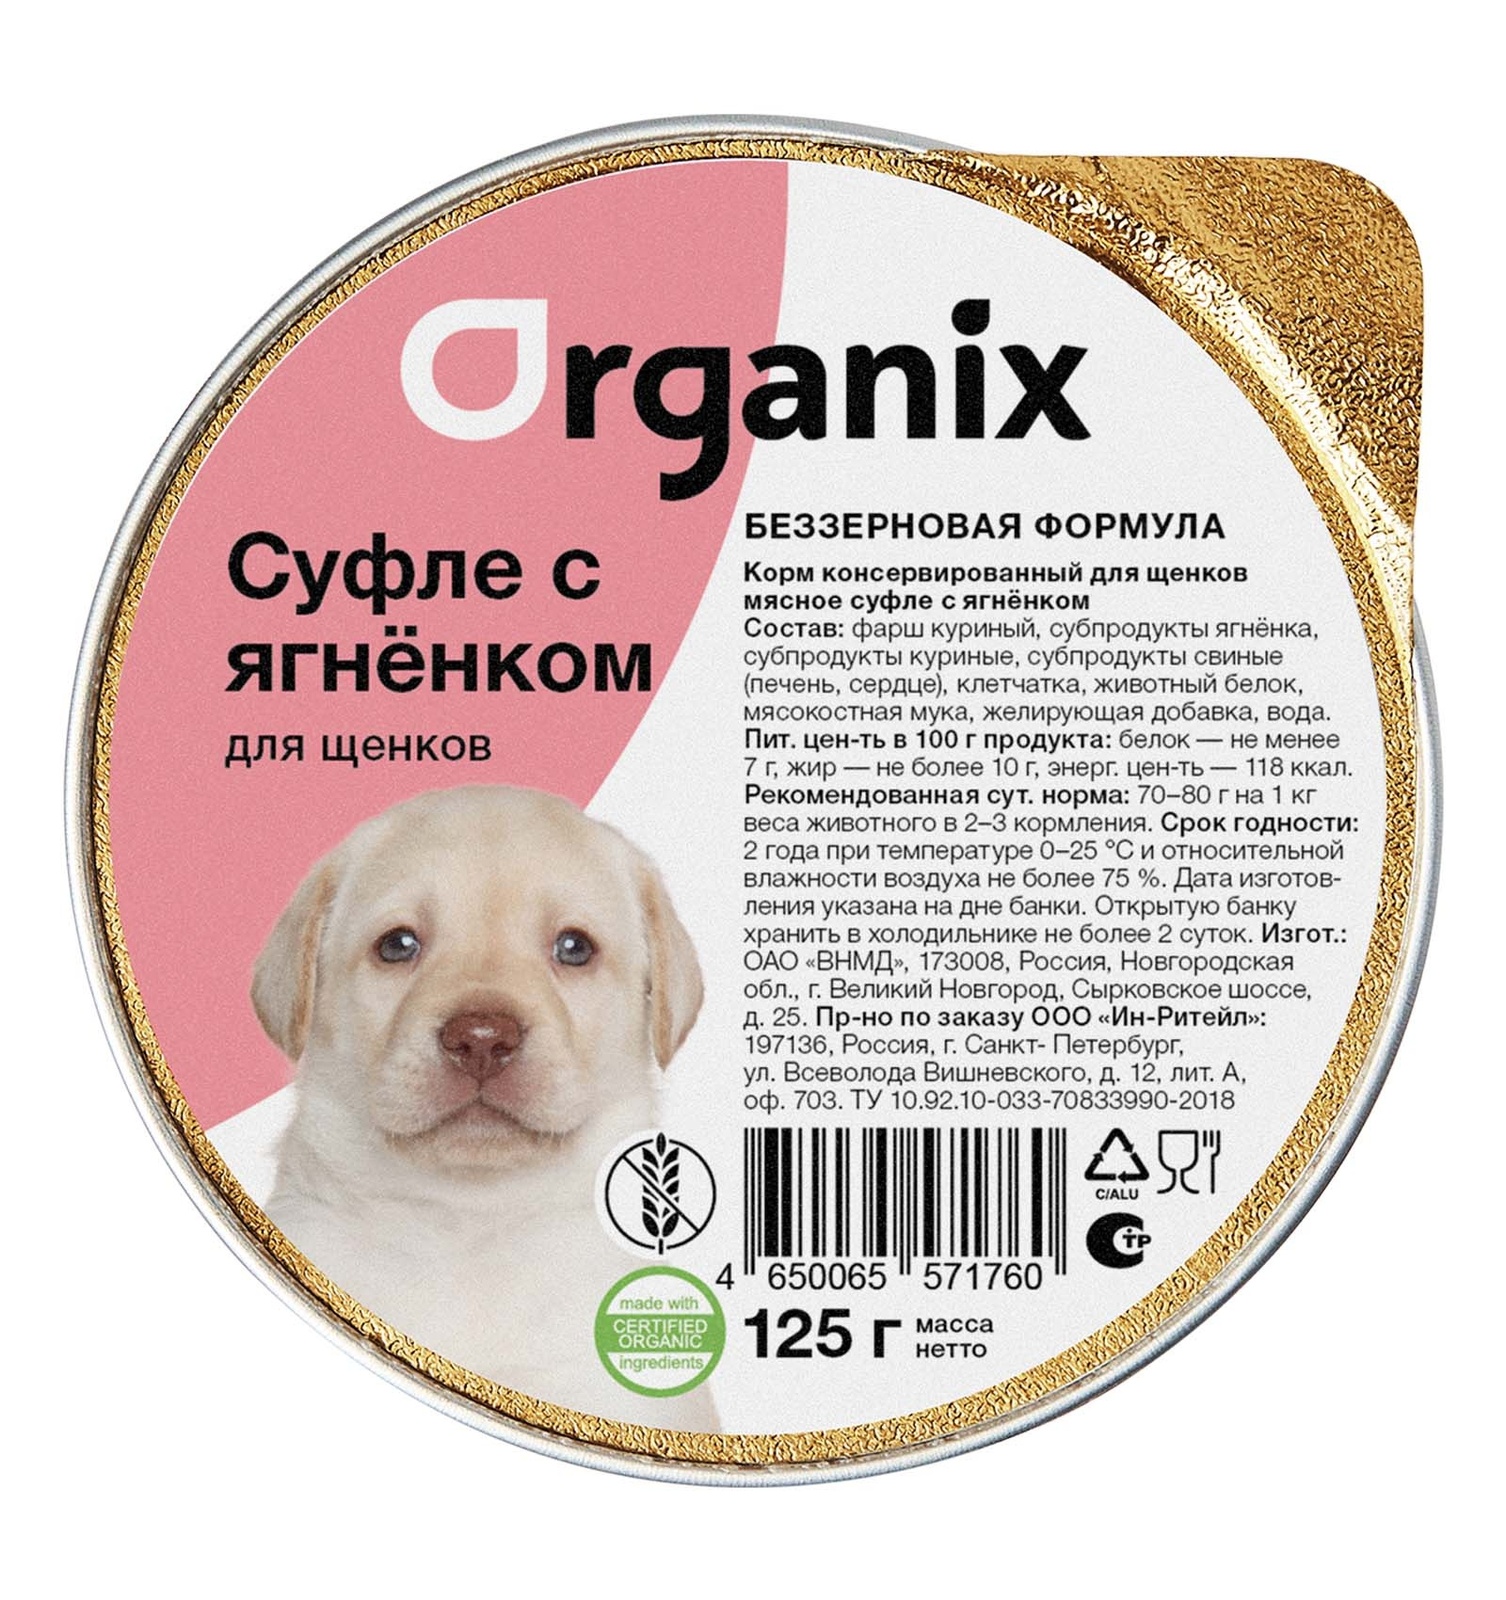 Organix консервы Organix мясное суфле с ягненком для щенков (125 г) organix мясное суфле для щенков с ягненком 125 гр х 16 шт